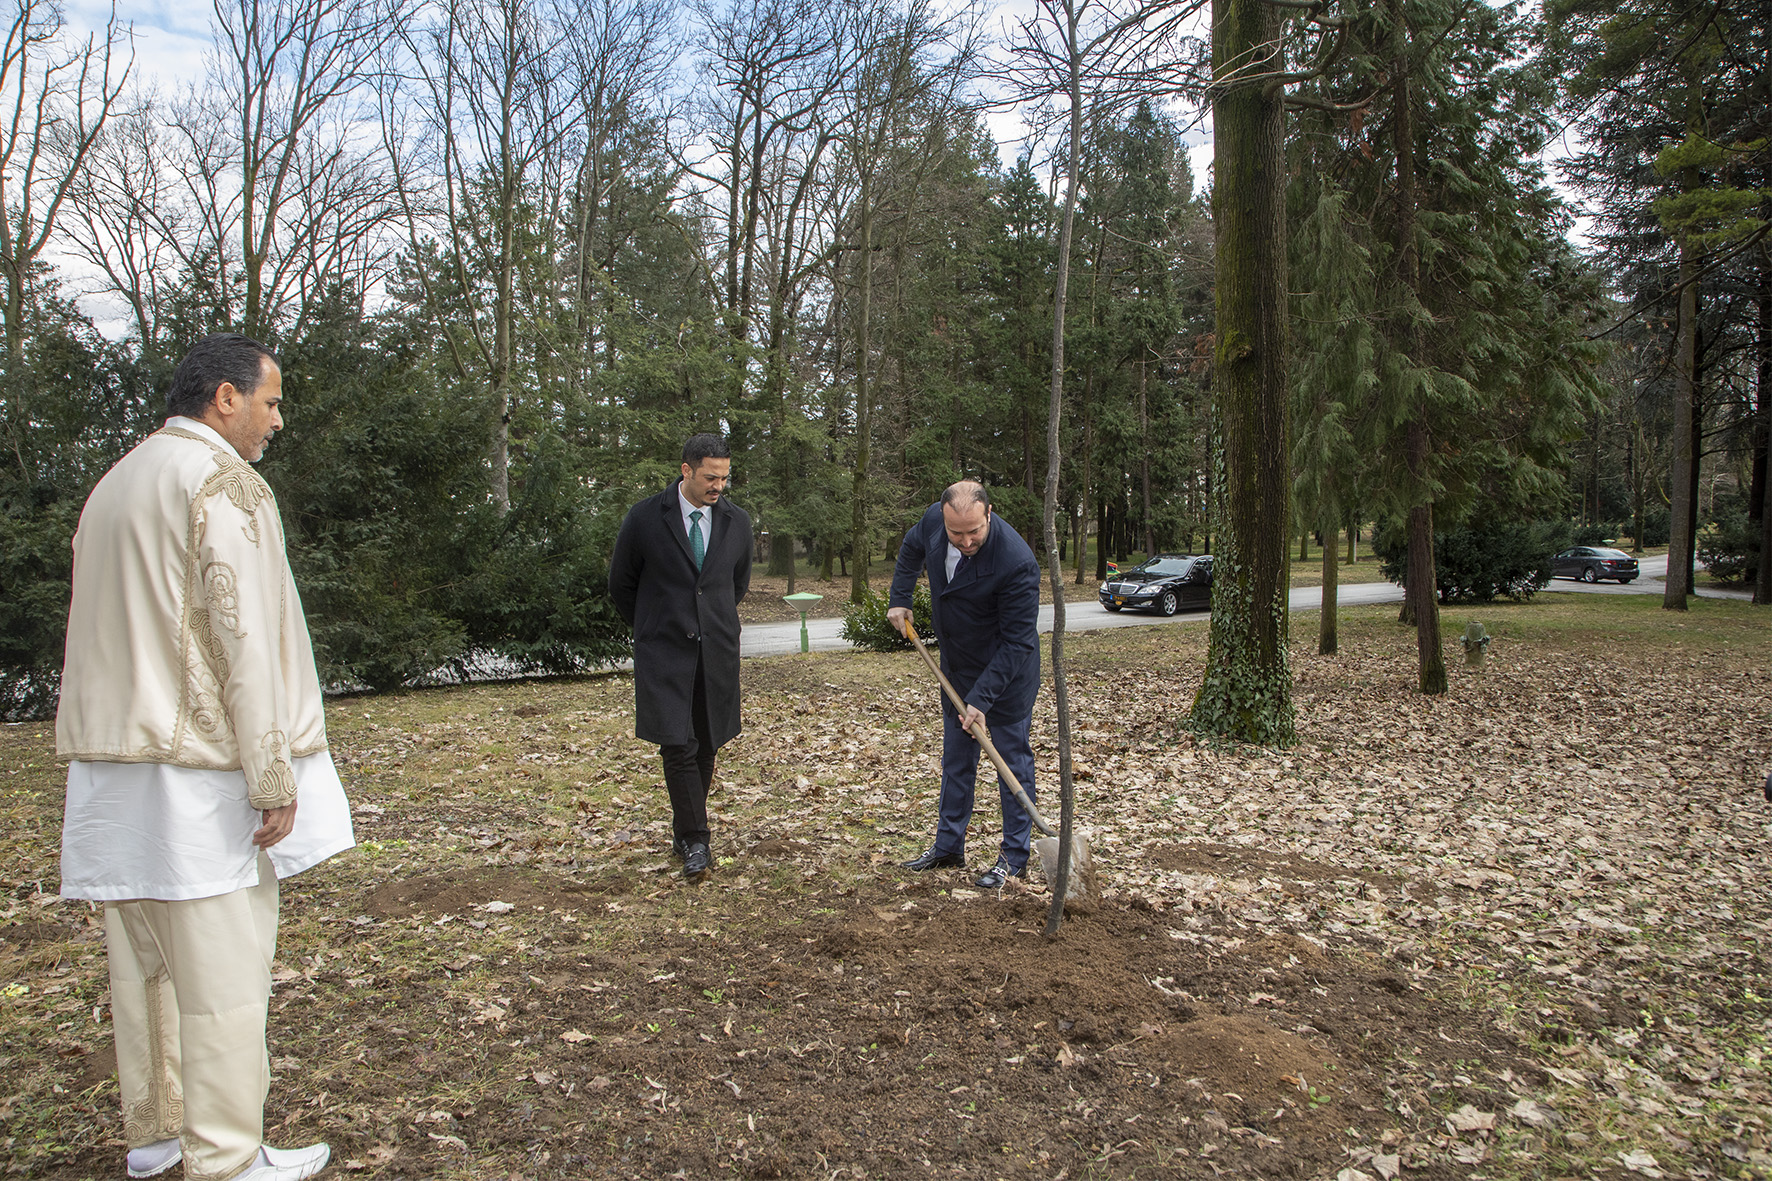 NJ.E. gospodin Mohamed Galbun, ambasador Libije u Srbiji, sadi drvo u Dvorskom kompleksu